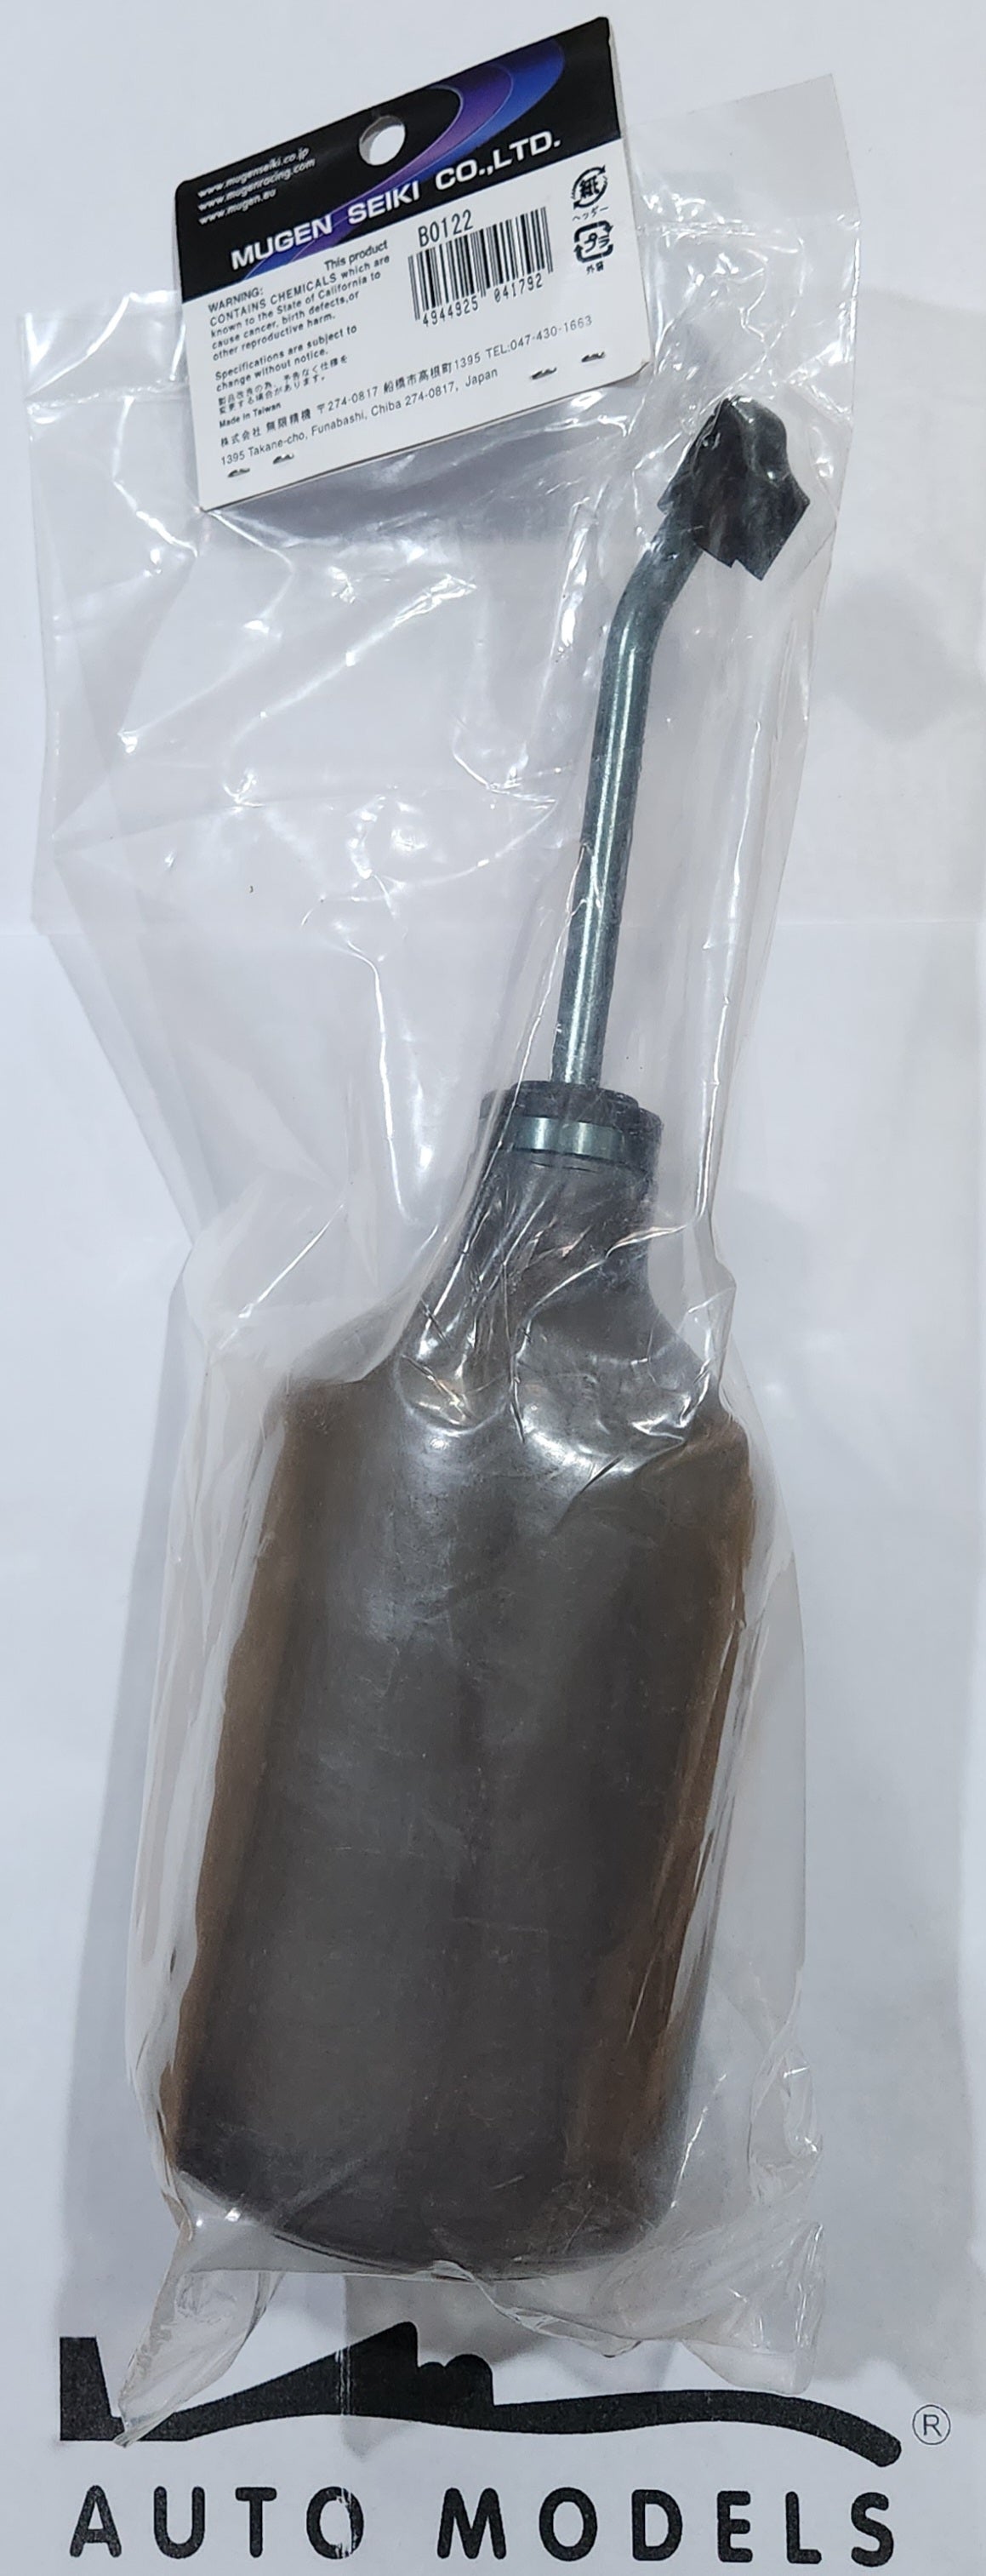 Mugen Seiki Fuel Bottle 500ml